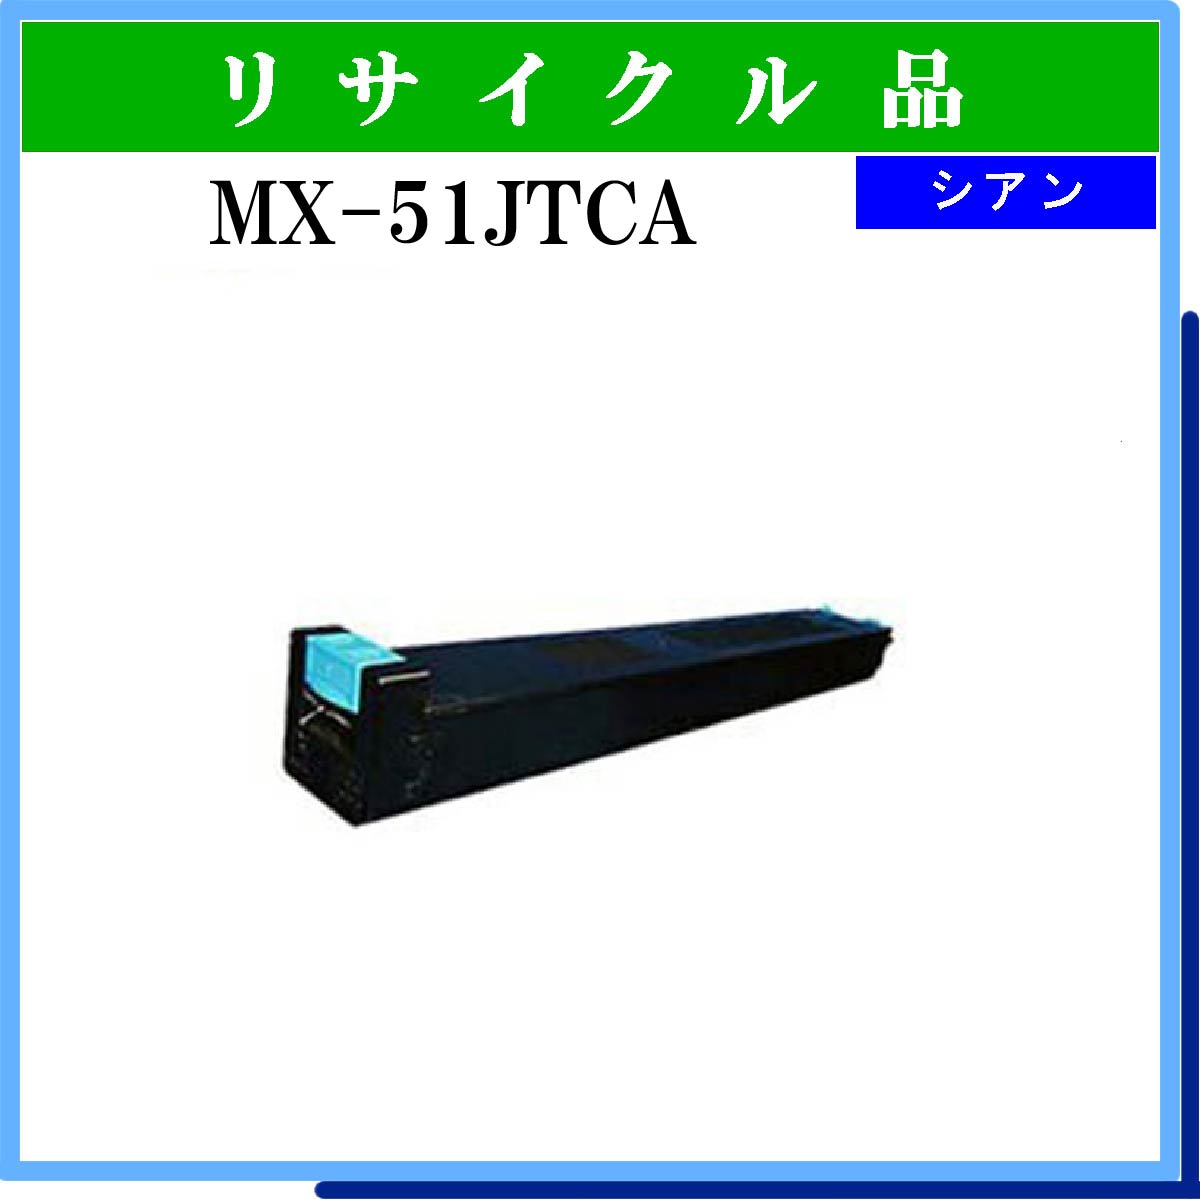 MX-51JTCA